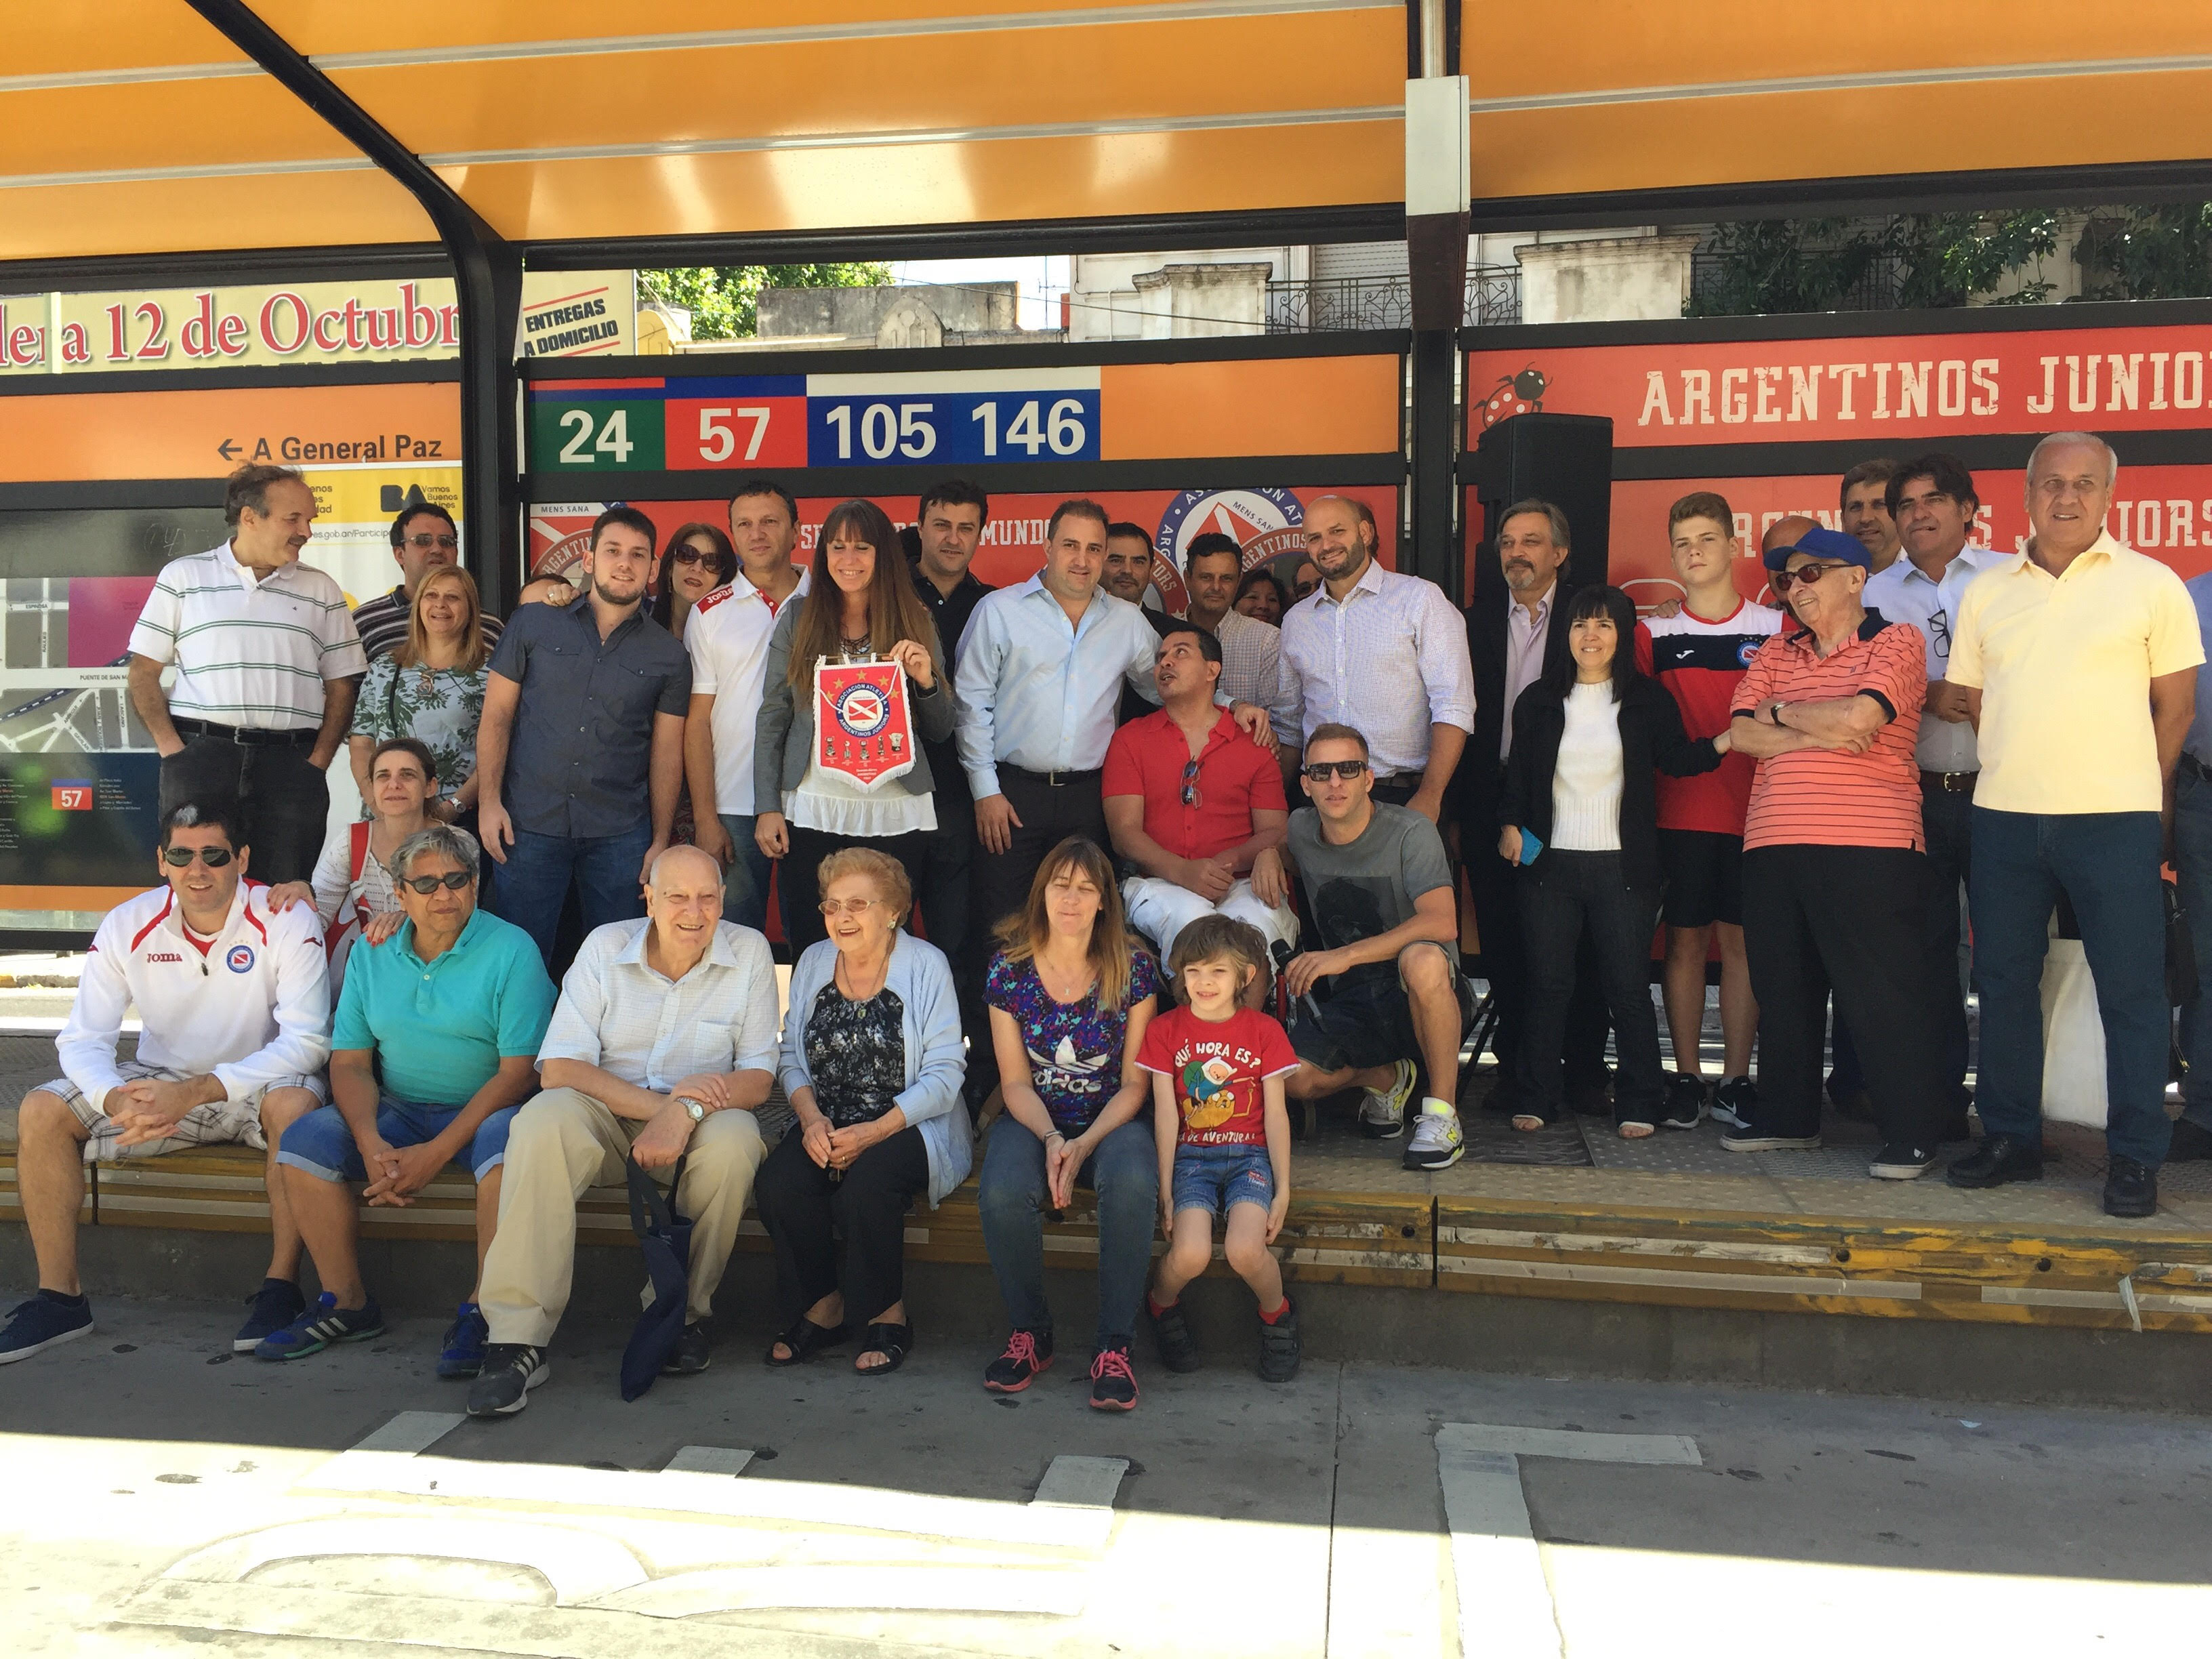  Argentinos Juniors ya tiene su estación de Metrobus